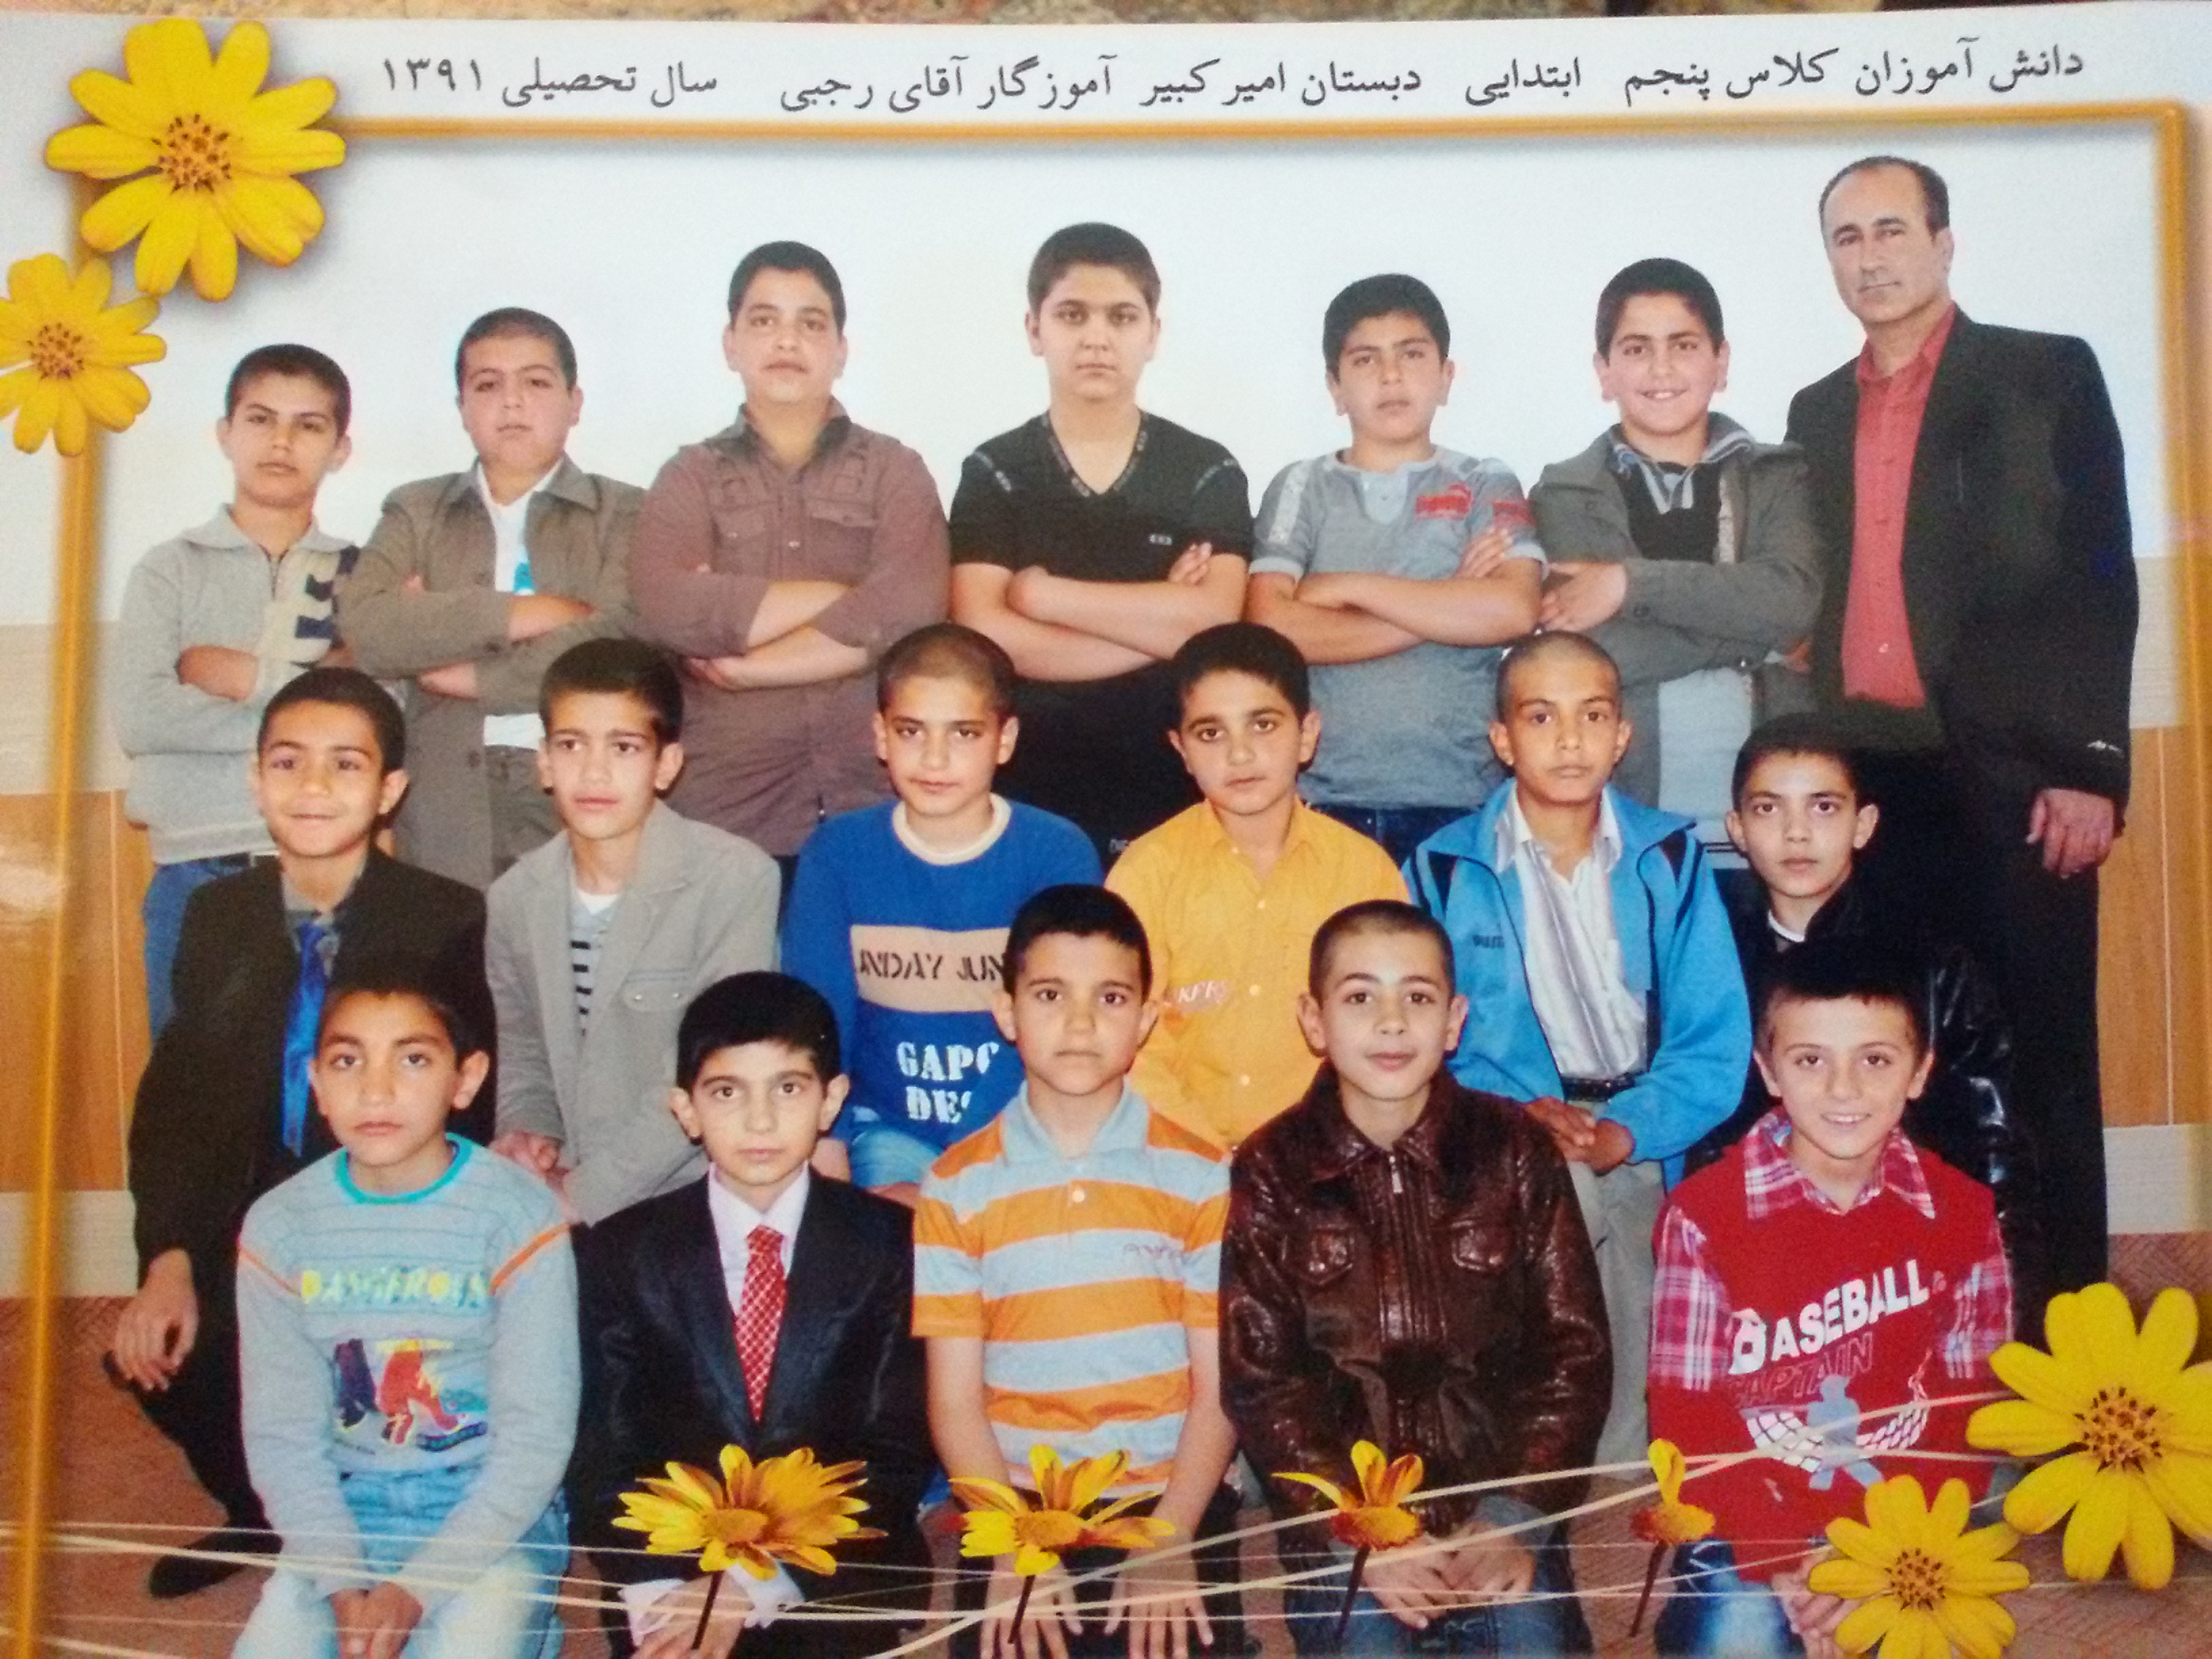 خاطرات مدرسه احمدرضا رجـــــــــــــــبی | کرکوند